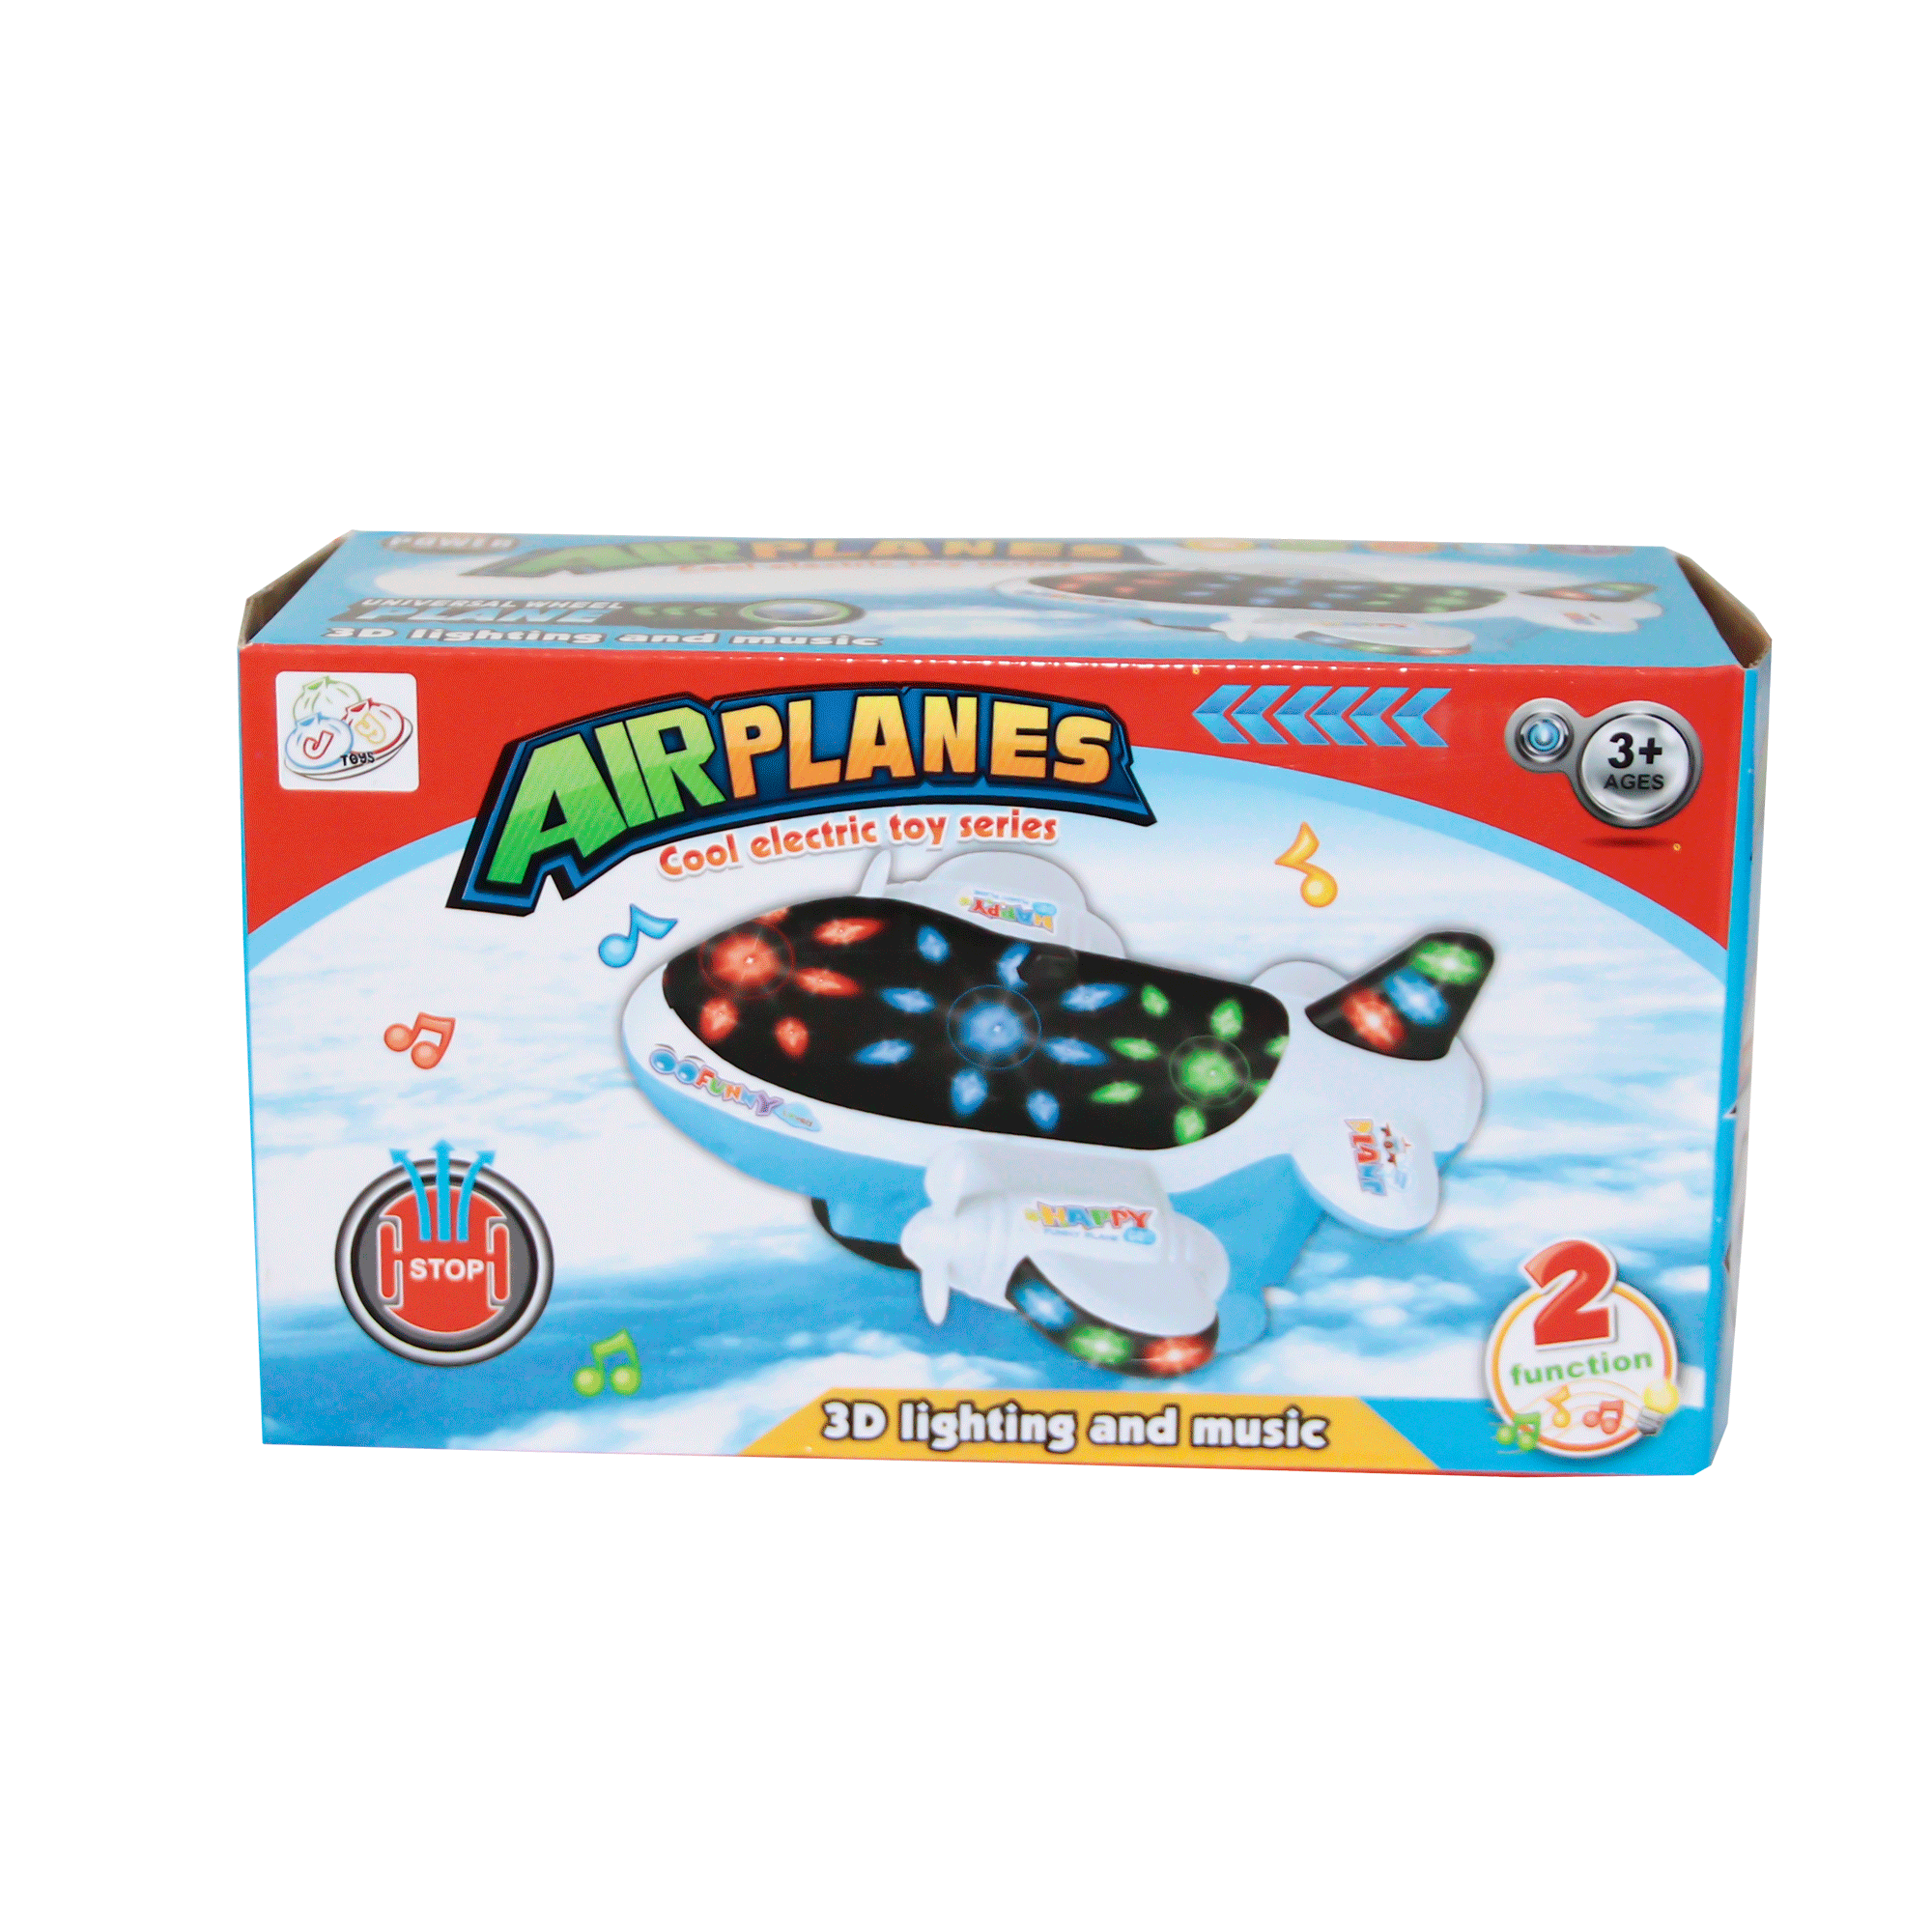 Խաղալիք ինքնաթիռ 300-67 1188 